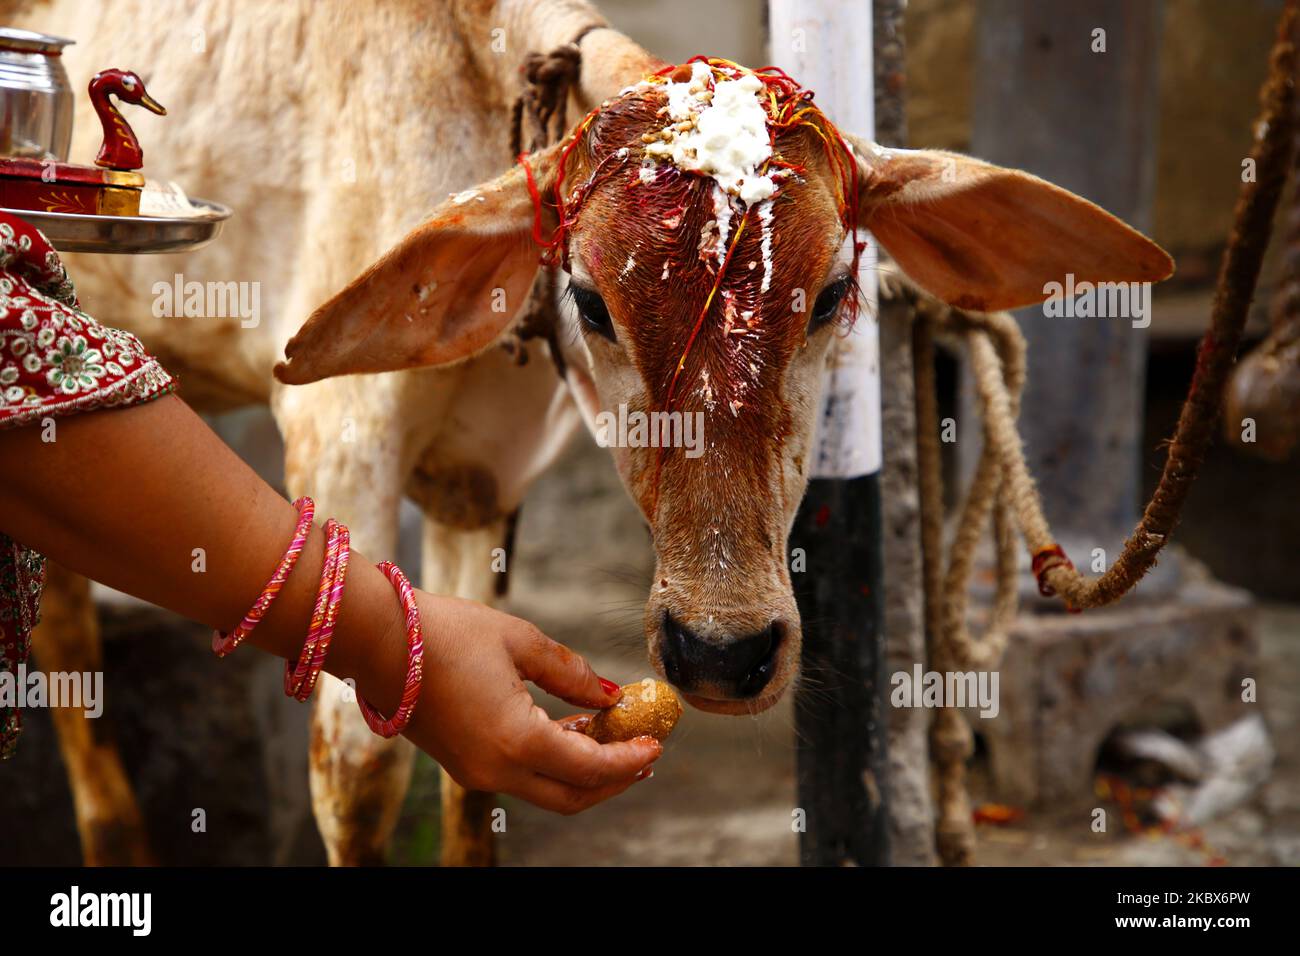 Indische Frauen beten eine Kuh an, ein Tier, das von hinduistischen Glaubensrichtungen heilig gehalten wird, um während des "Bach Baras"-Festivals in Ajmer, Indien, den Segen für ihr Kind und ihre Familie zu suchen 16. August 2020. (Foto von Himanshu Sharma/NurPhoto Stockfoto